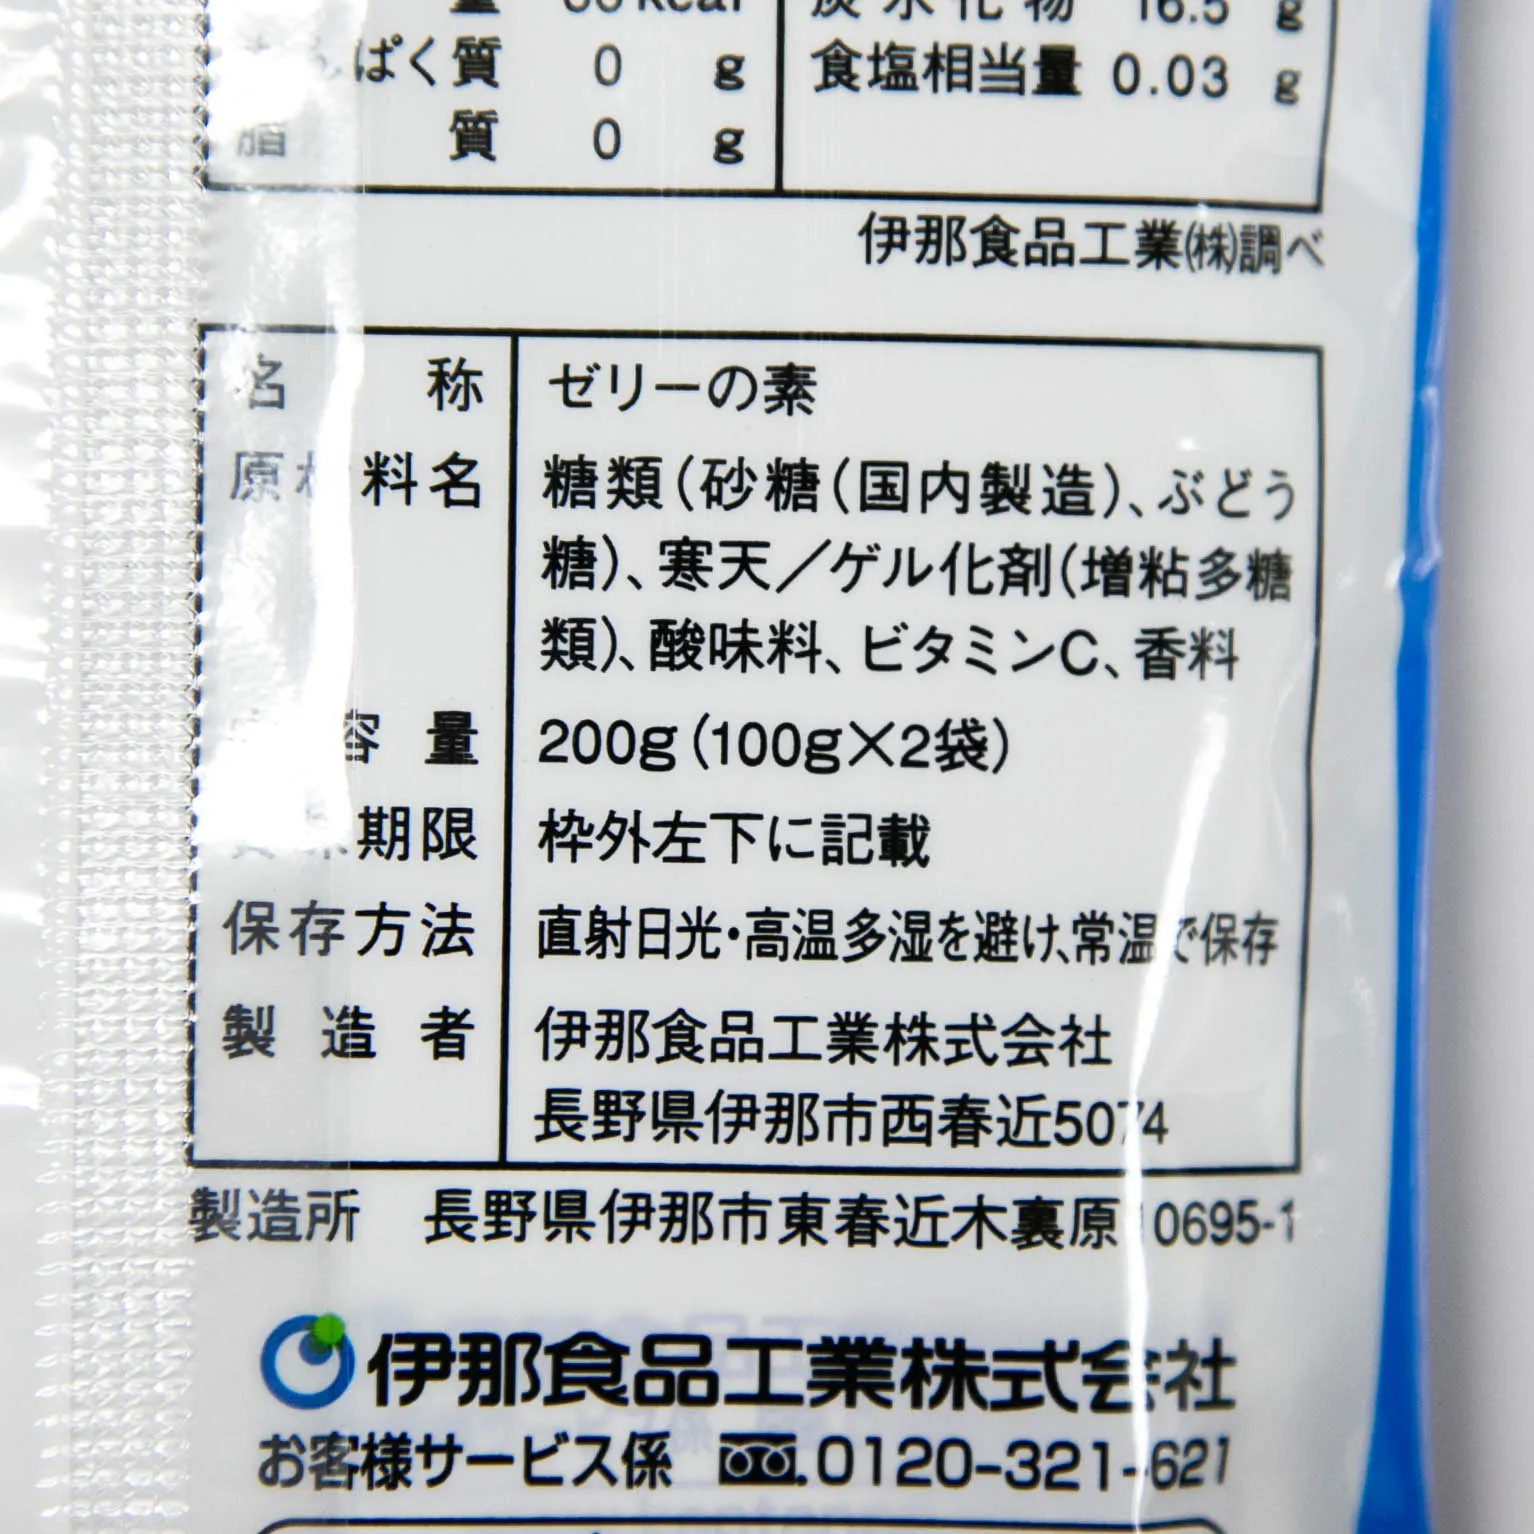 カップゼリークール(サイダー味) 100g